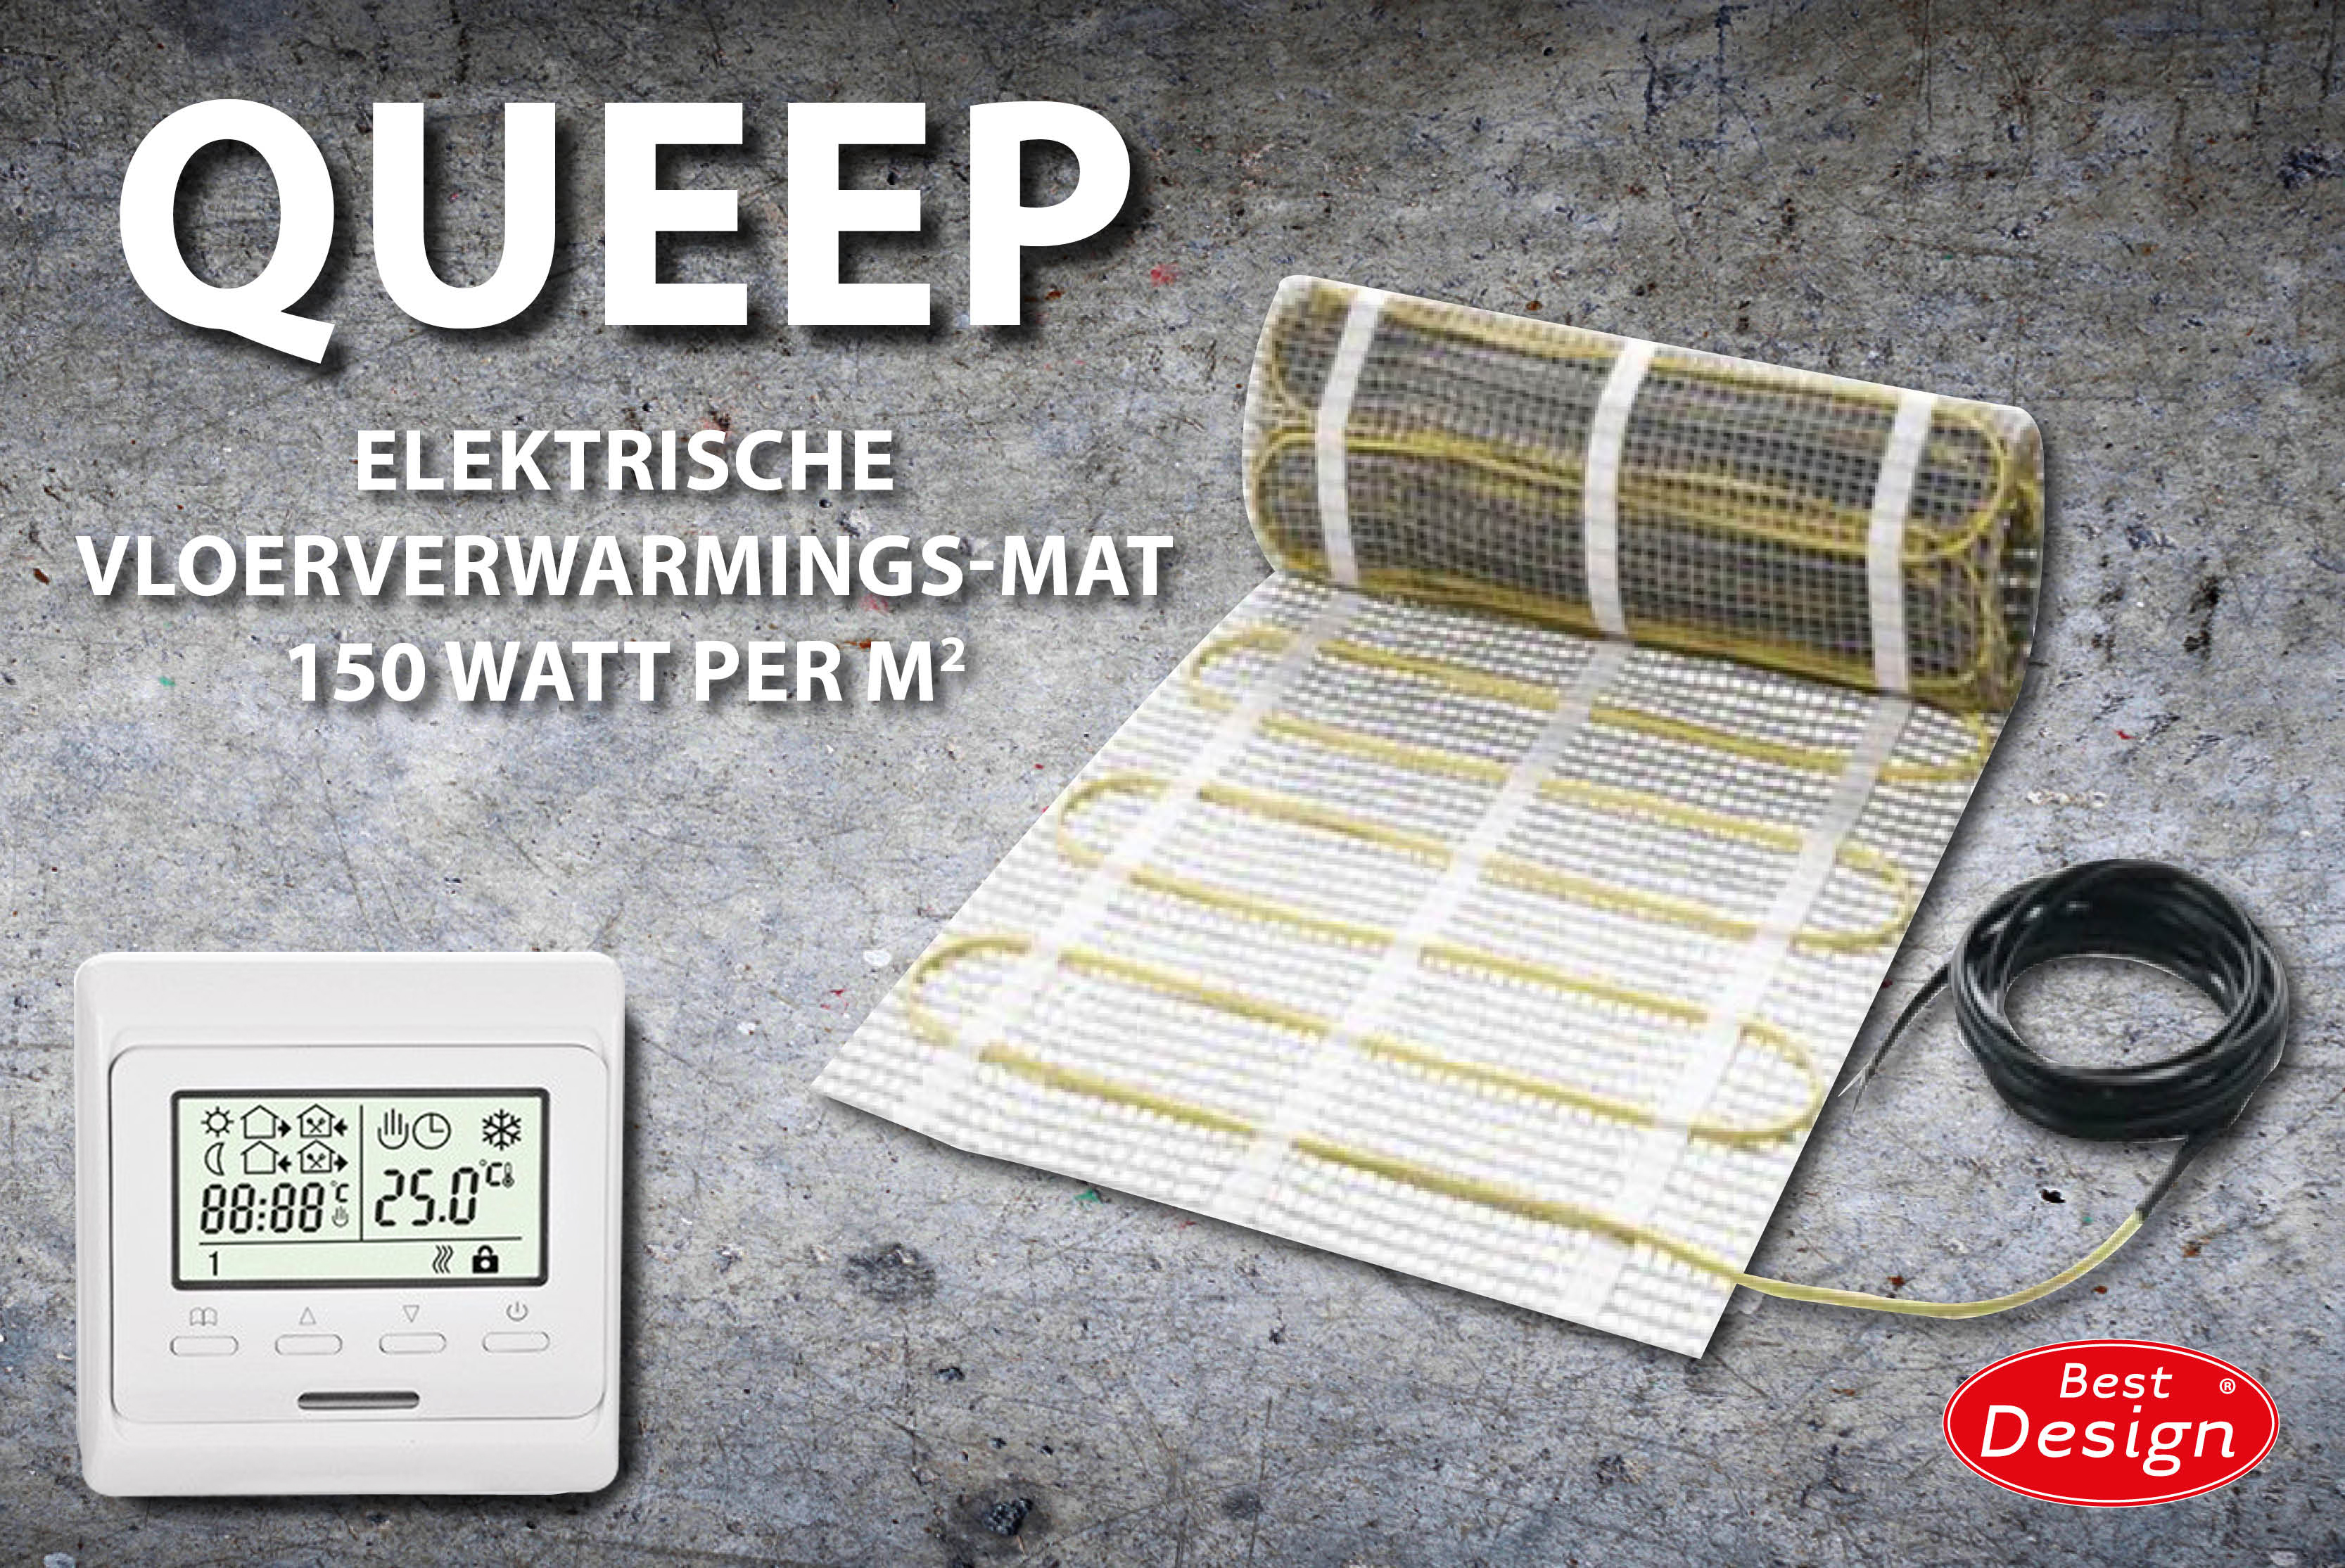 Best-Design Queep elektrische vloerverwarmings-mat 4.0 m2 Top Merken Winkel